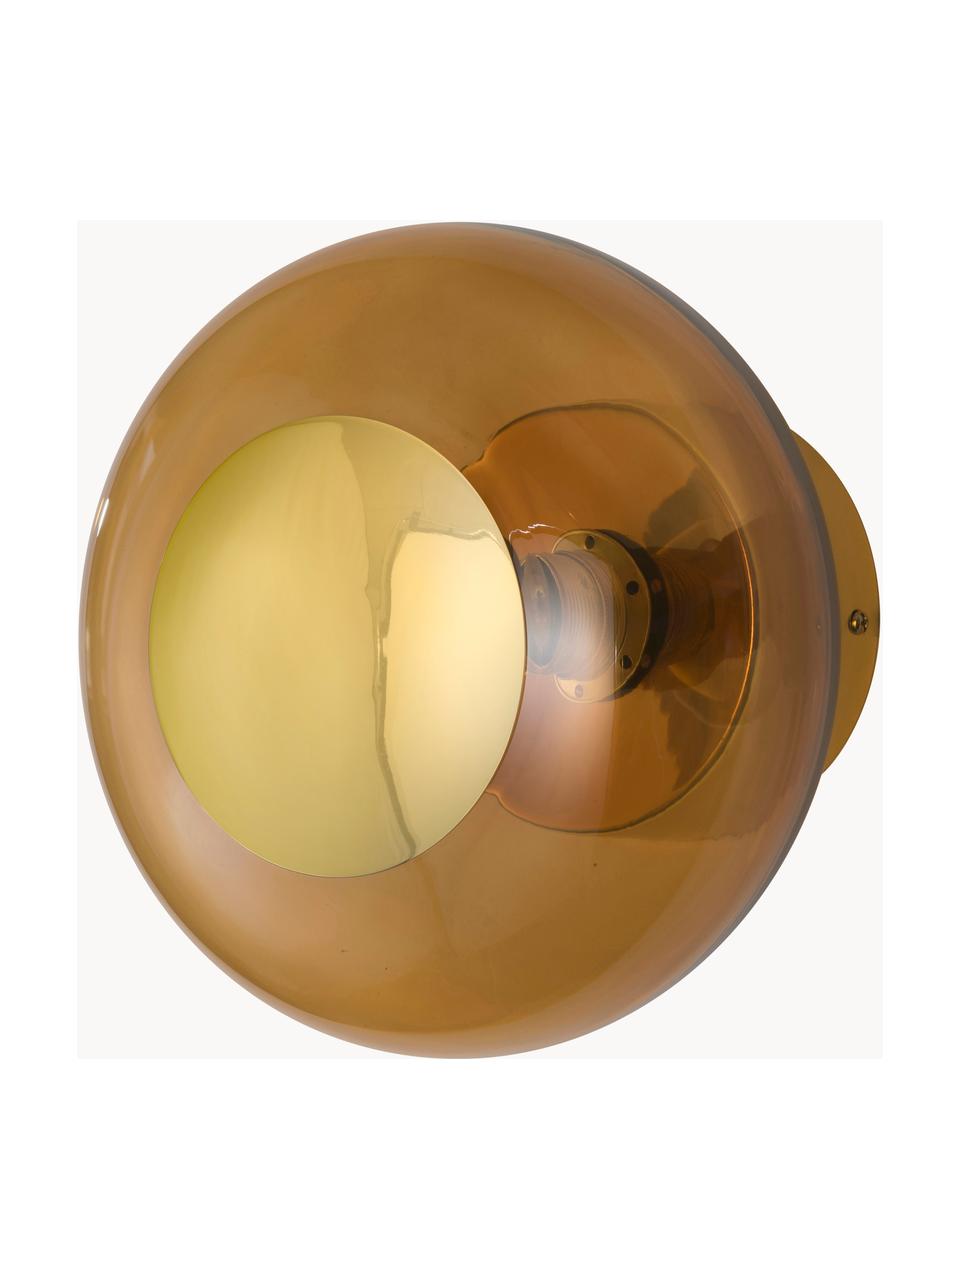 Mondgeblazen wandlamp Horizon, Lampenkap: mondgeblazen glas, Bruin, goudkleurig, Ø 21 x D 17 cm